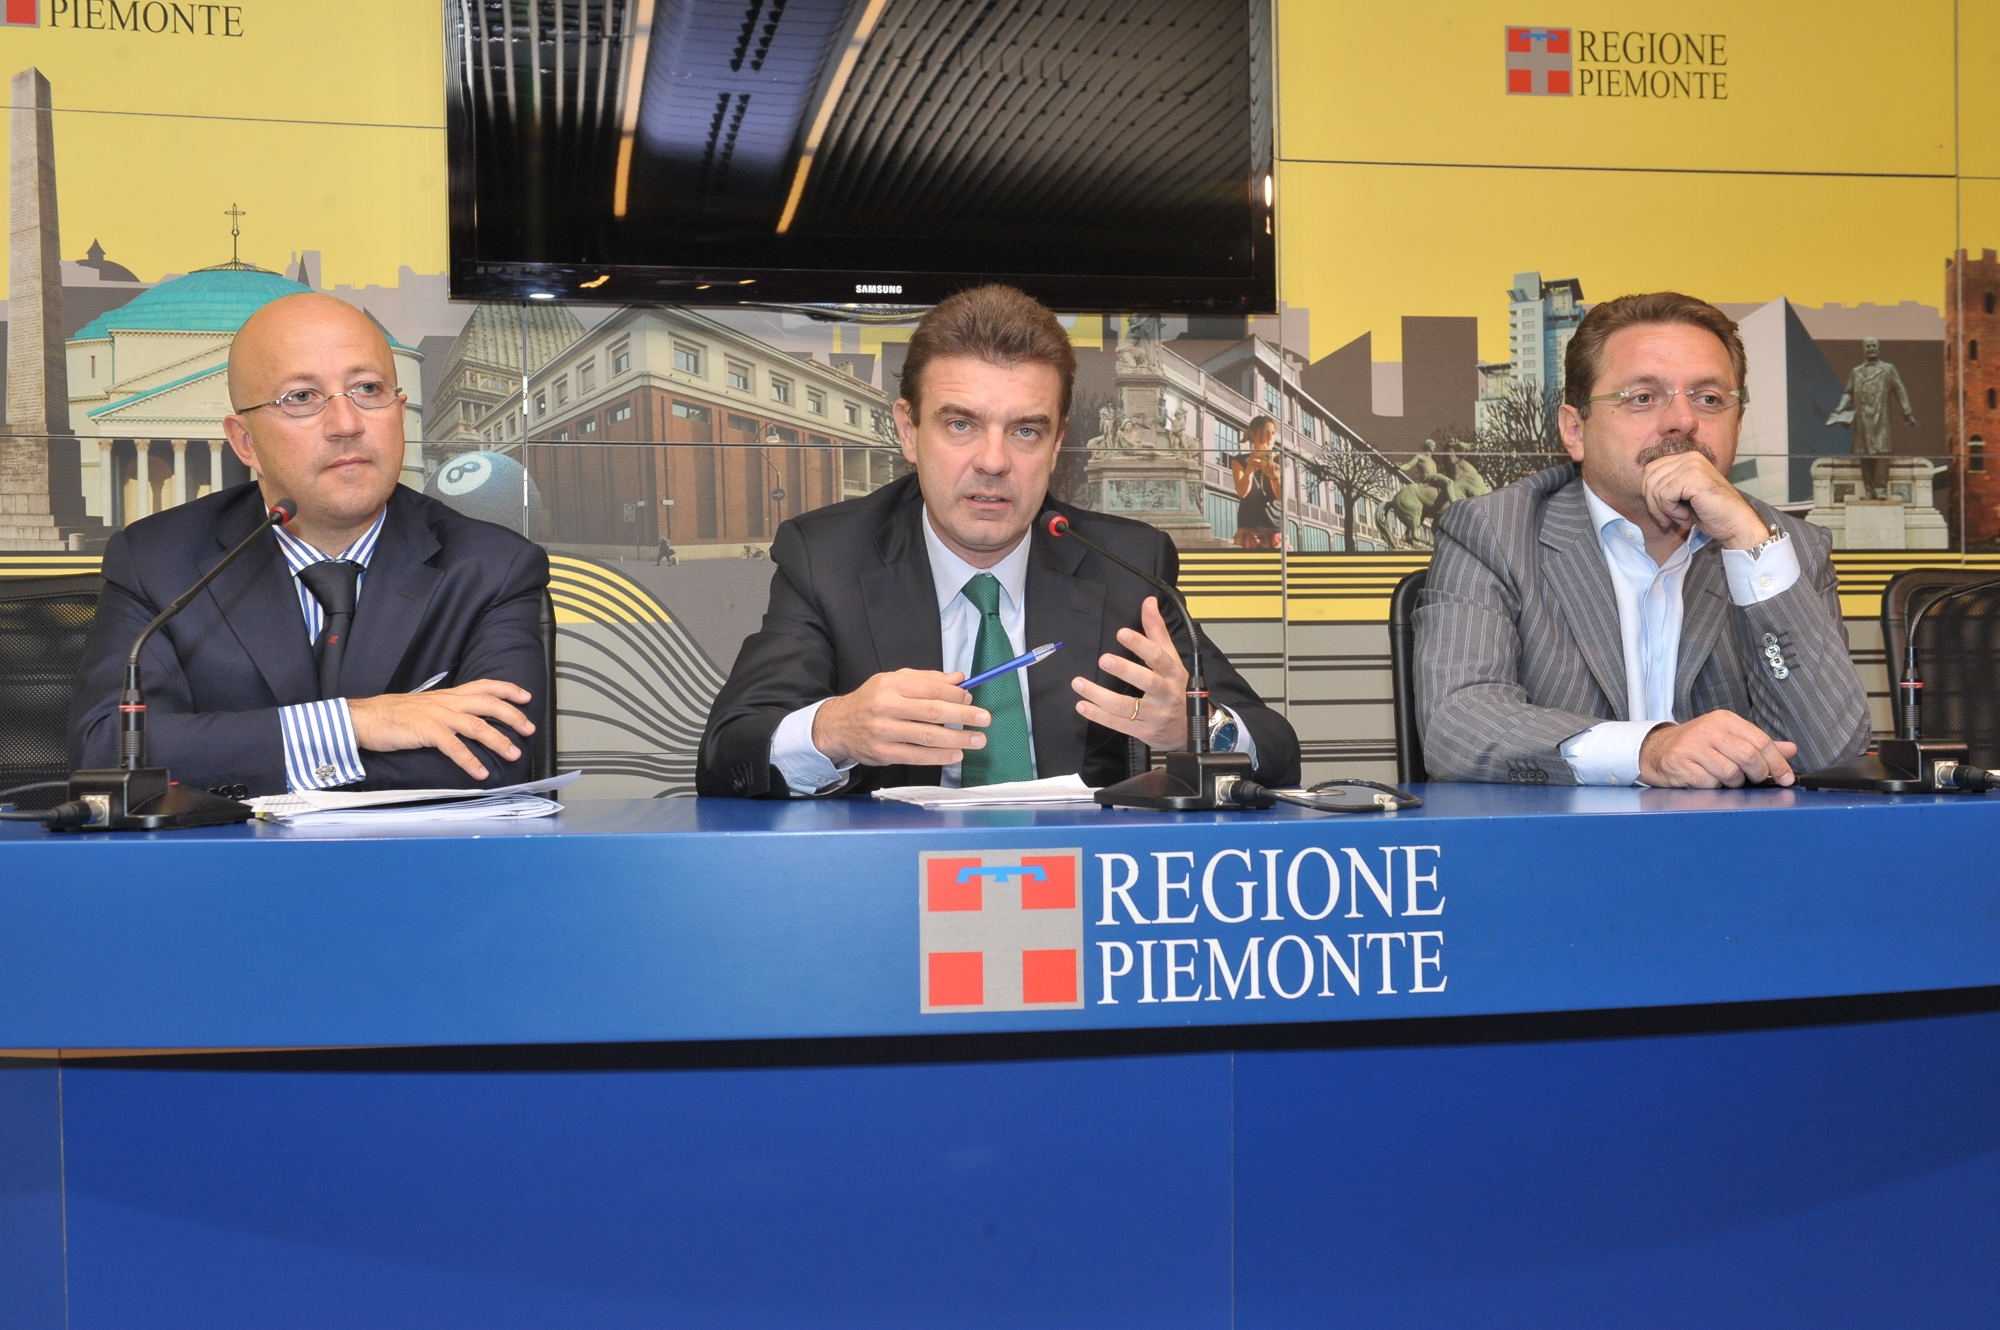 Piemonte, la Regione ha presentato ricorso al Consiglio di Stato